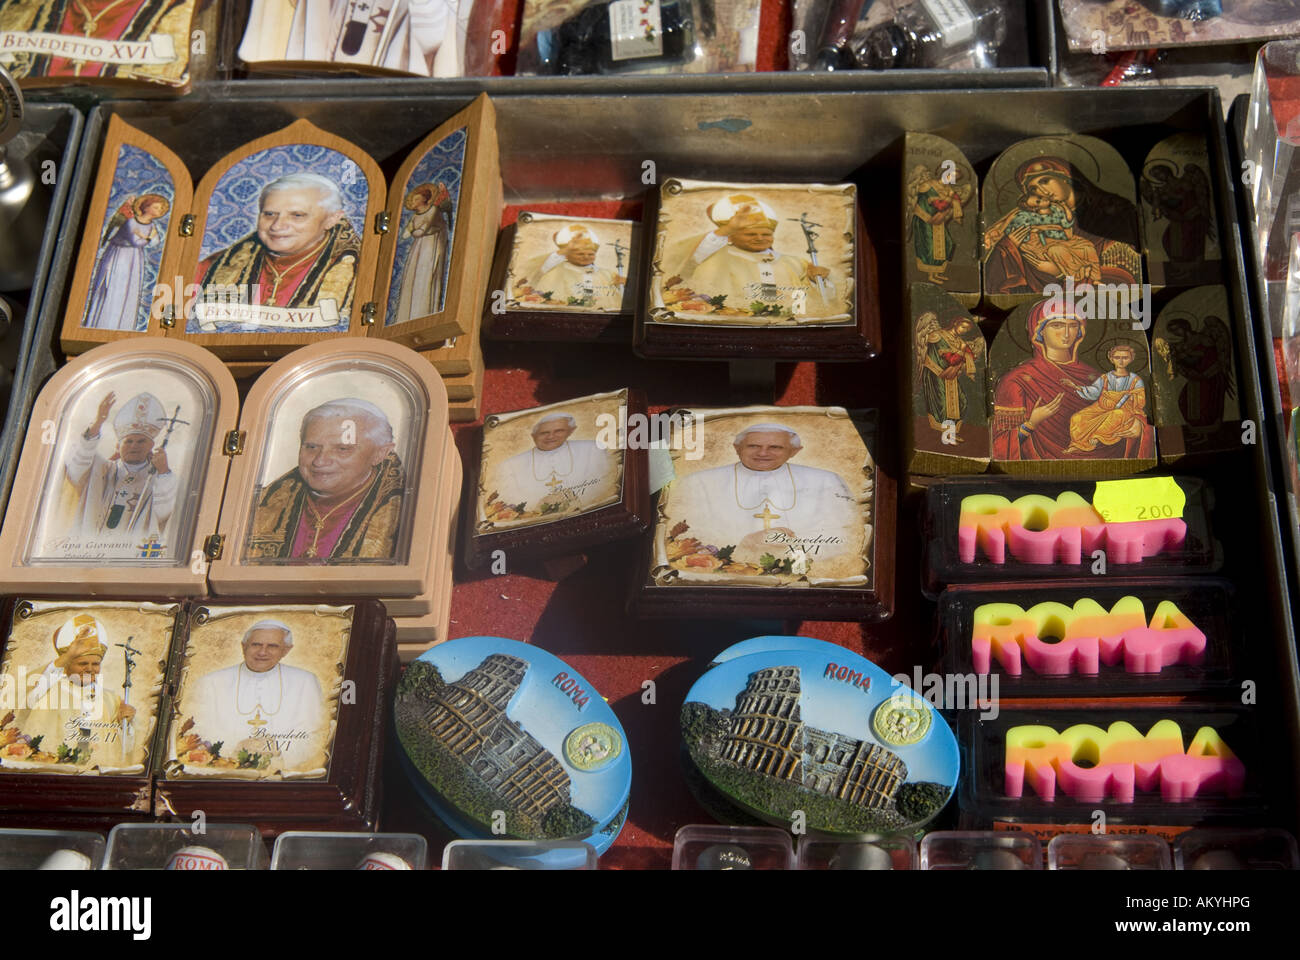 Negozio di souvenir al Vatikan, immagini di Papa Benedetto XVI e Giovanni Paolo II, Roma, Italia. Foto Stock